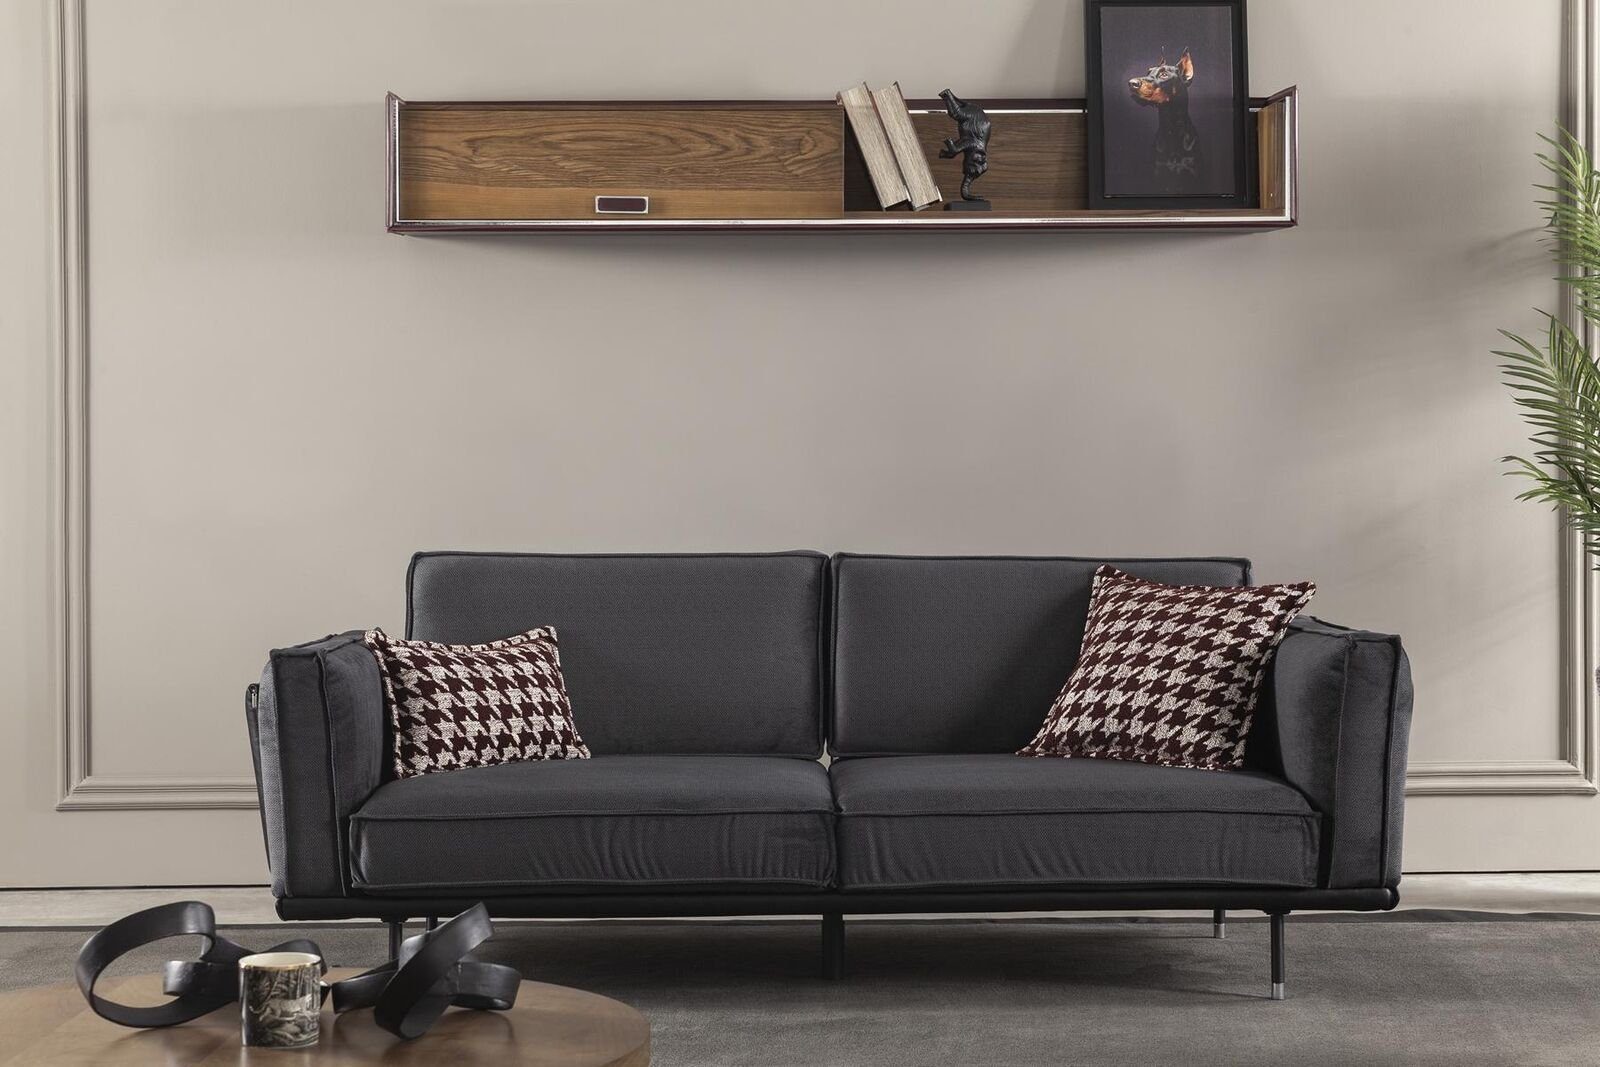 JVmoebel 3-Sitzer Sofa Dreisitzer Italienische Stil Möbel Graue Polster Couch Weich, 1 Teile, Made in Europa